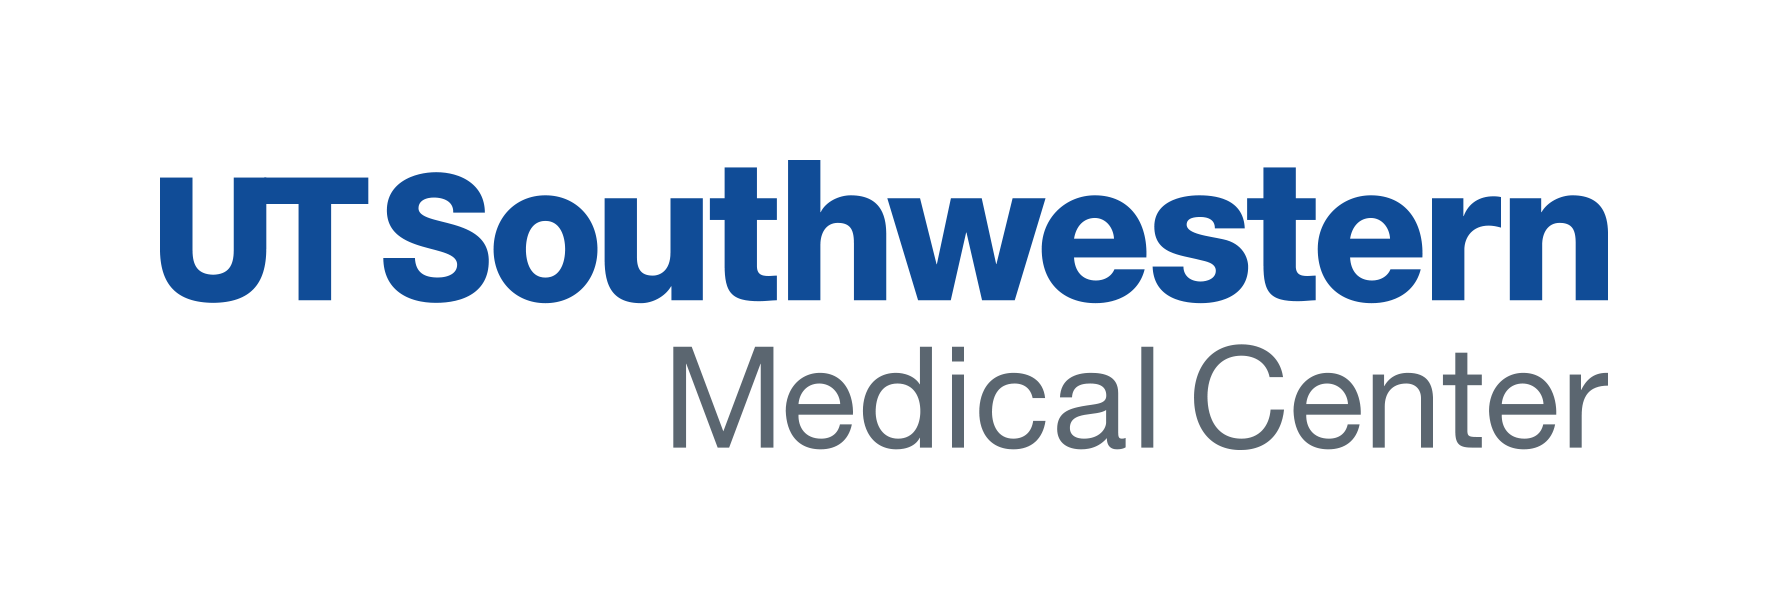 UT Southwestern Medical Center